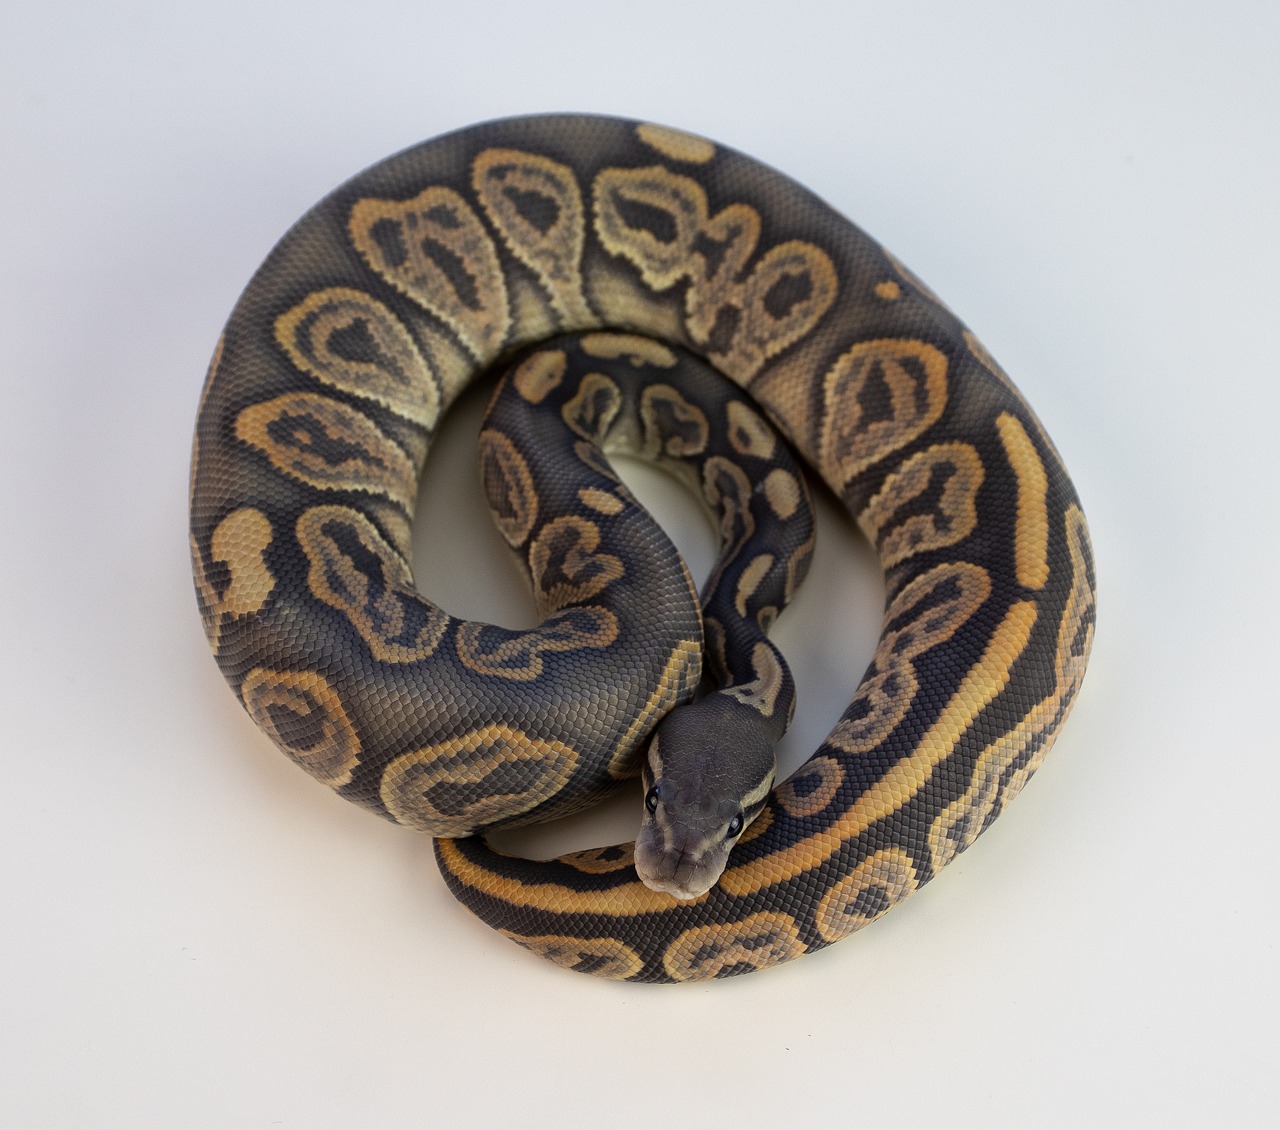 A cute Ball Python